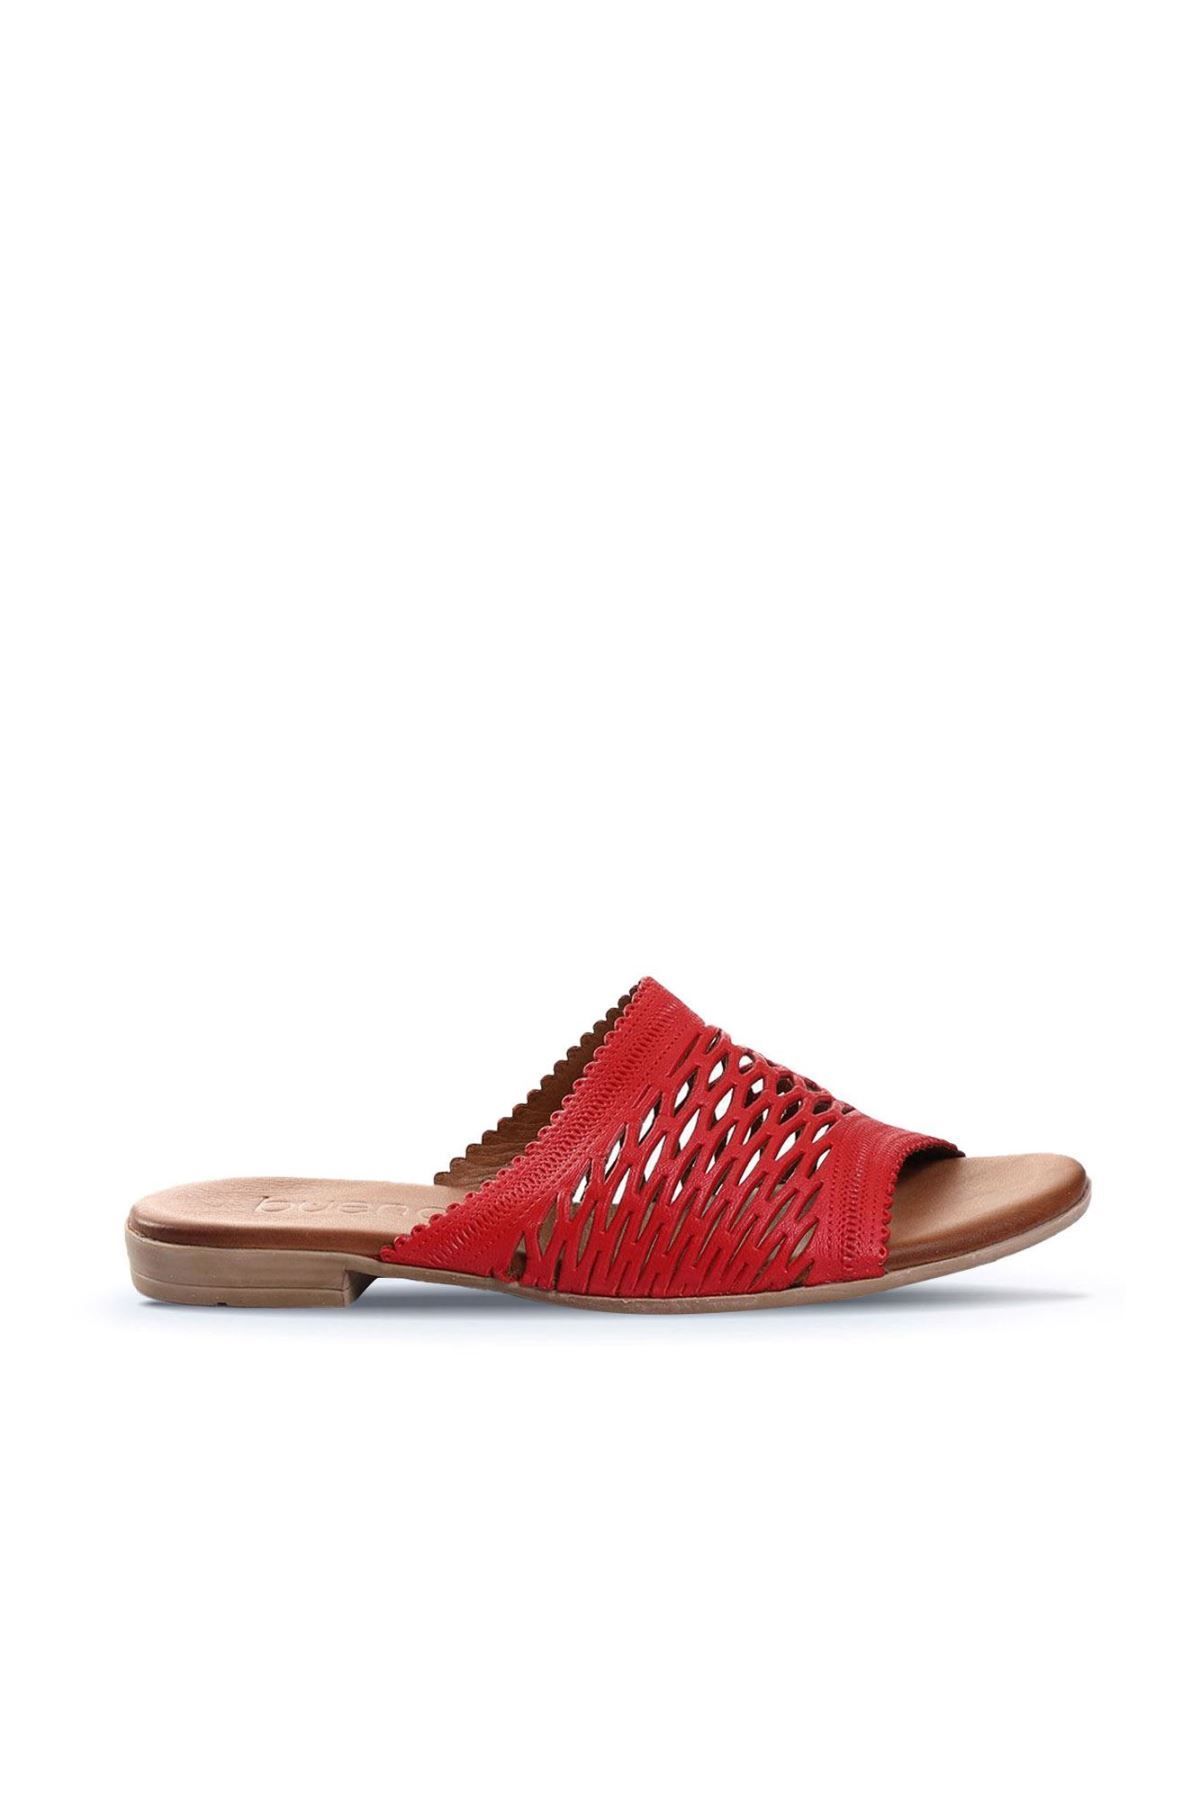 BUENO Shoes Kırmızı Deri Kadın Düz Terlik